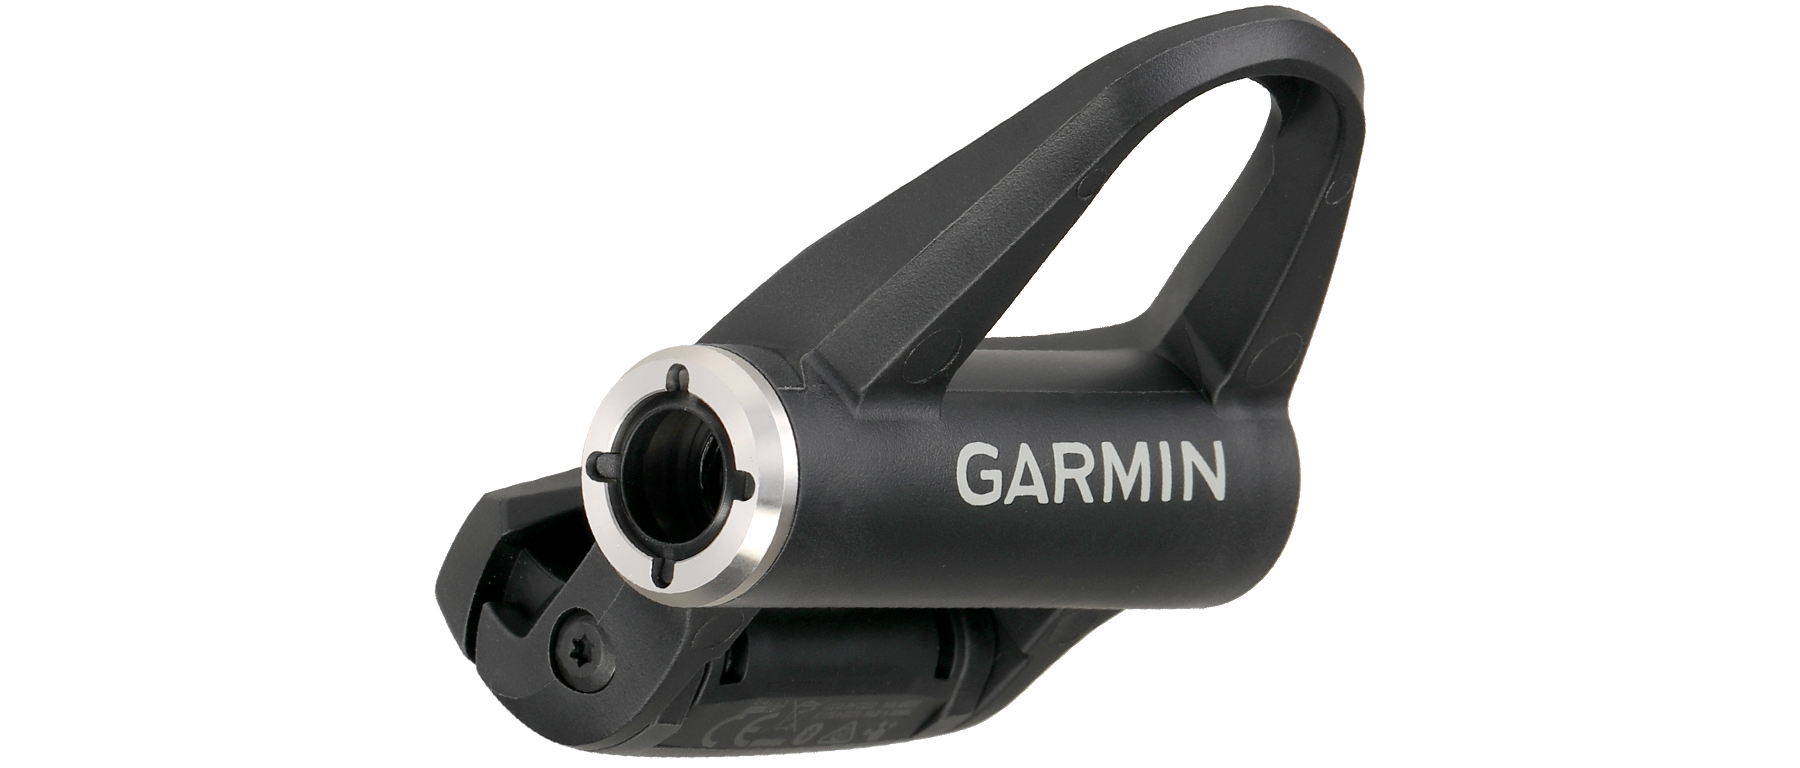 Garmin Rally RS Pedal Body Conversion Kit